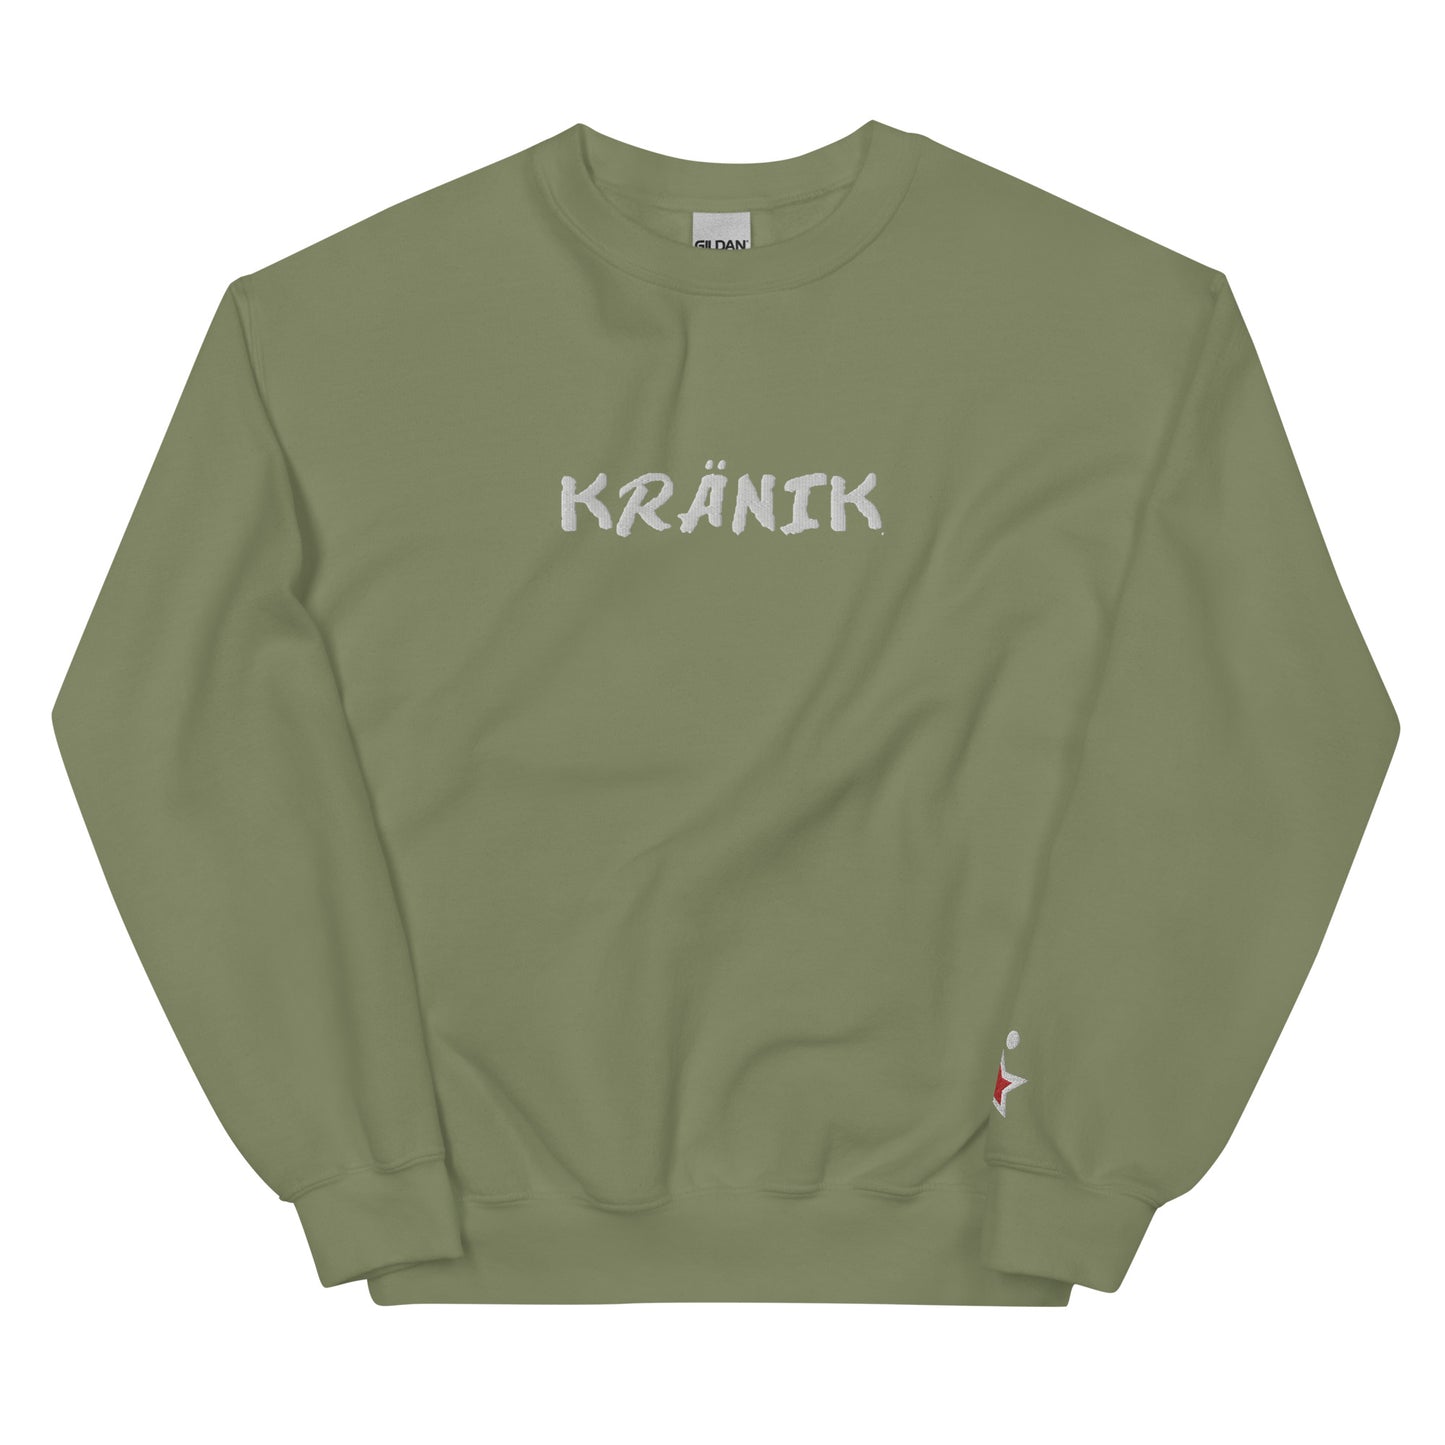 Kranik Brand / Crew / OG DARE Logo / White / Embroidered